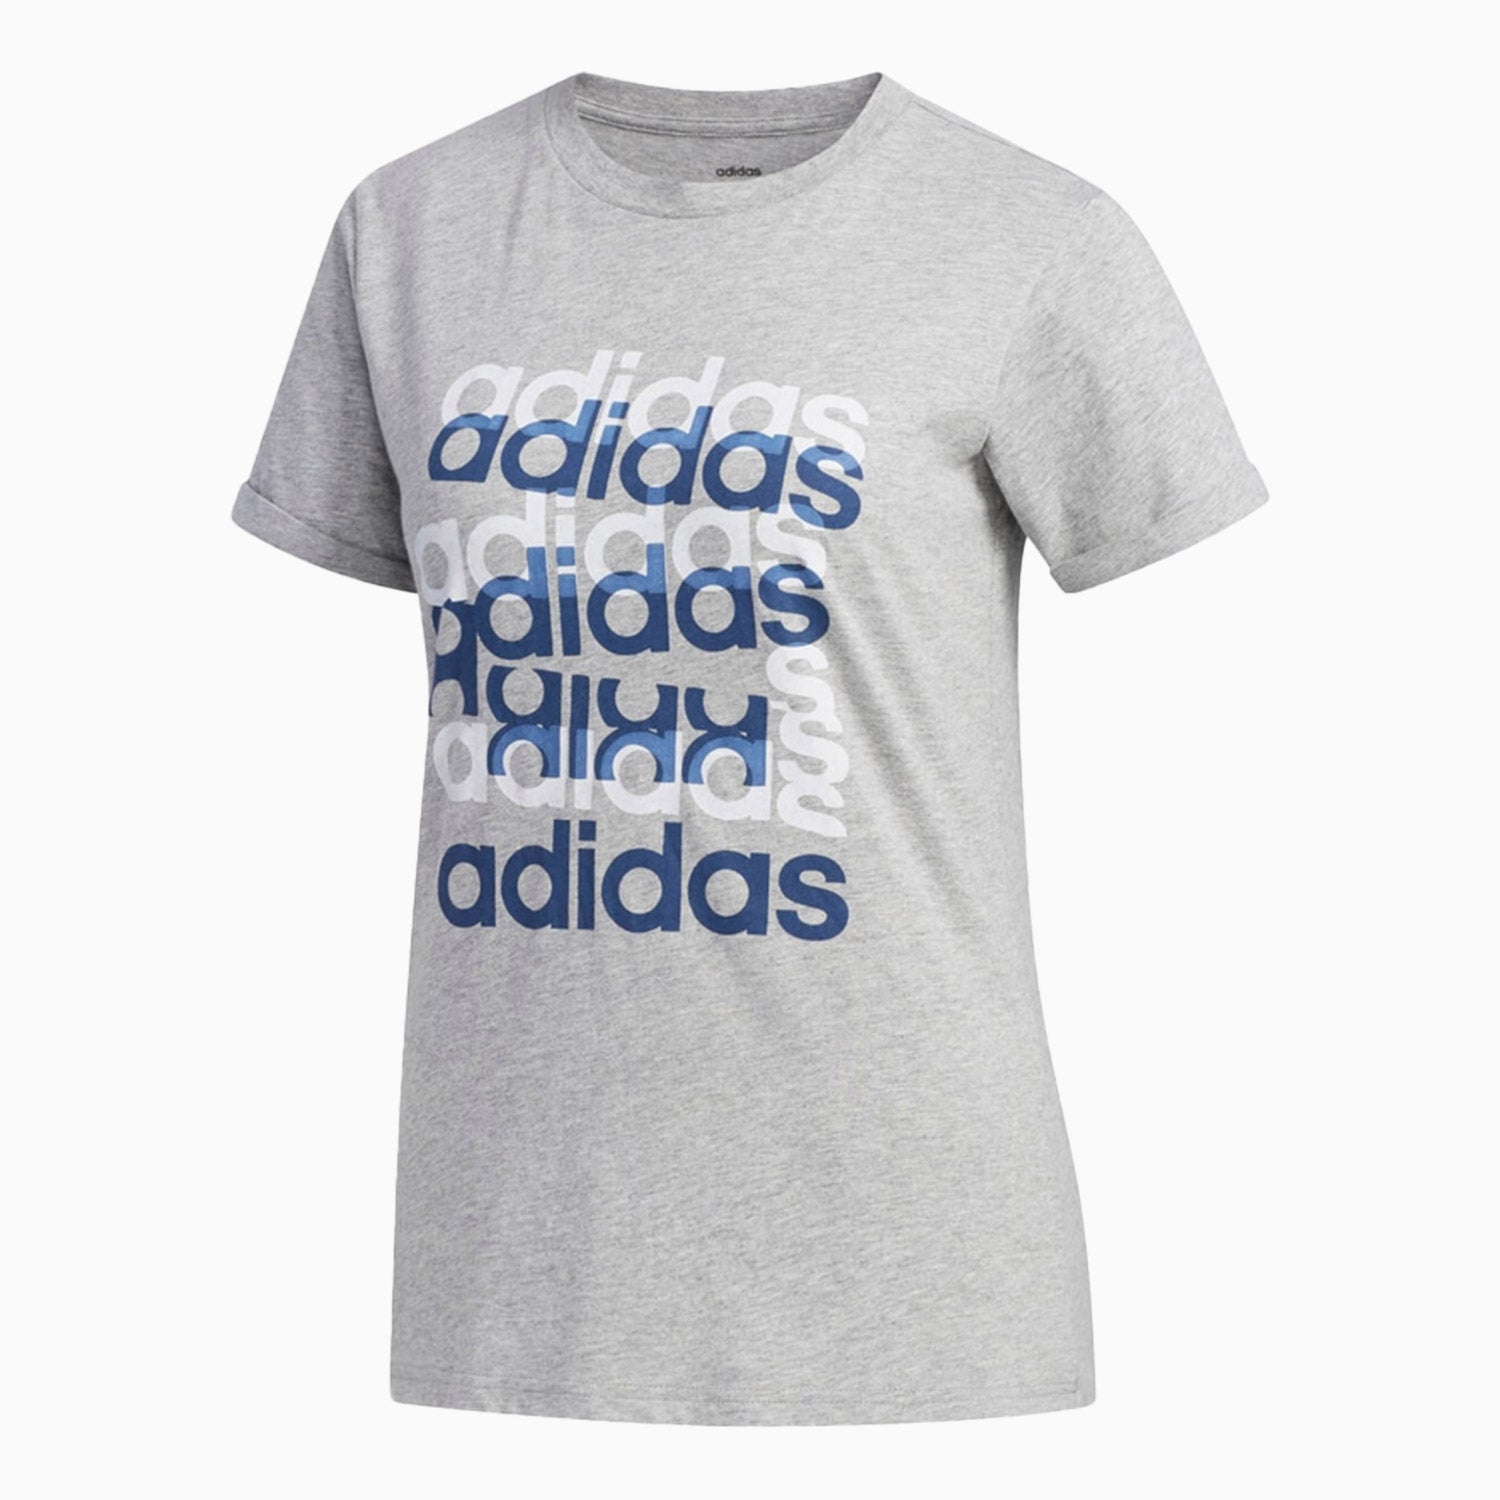 adidas-womens-big-graphic-t-shirt-fm6156